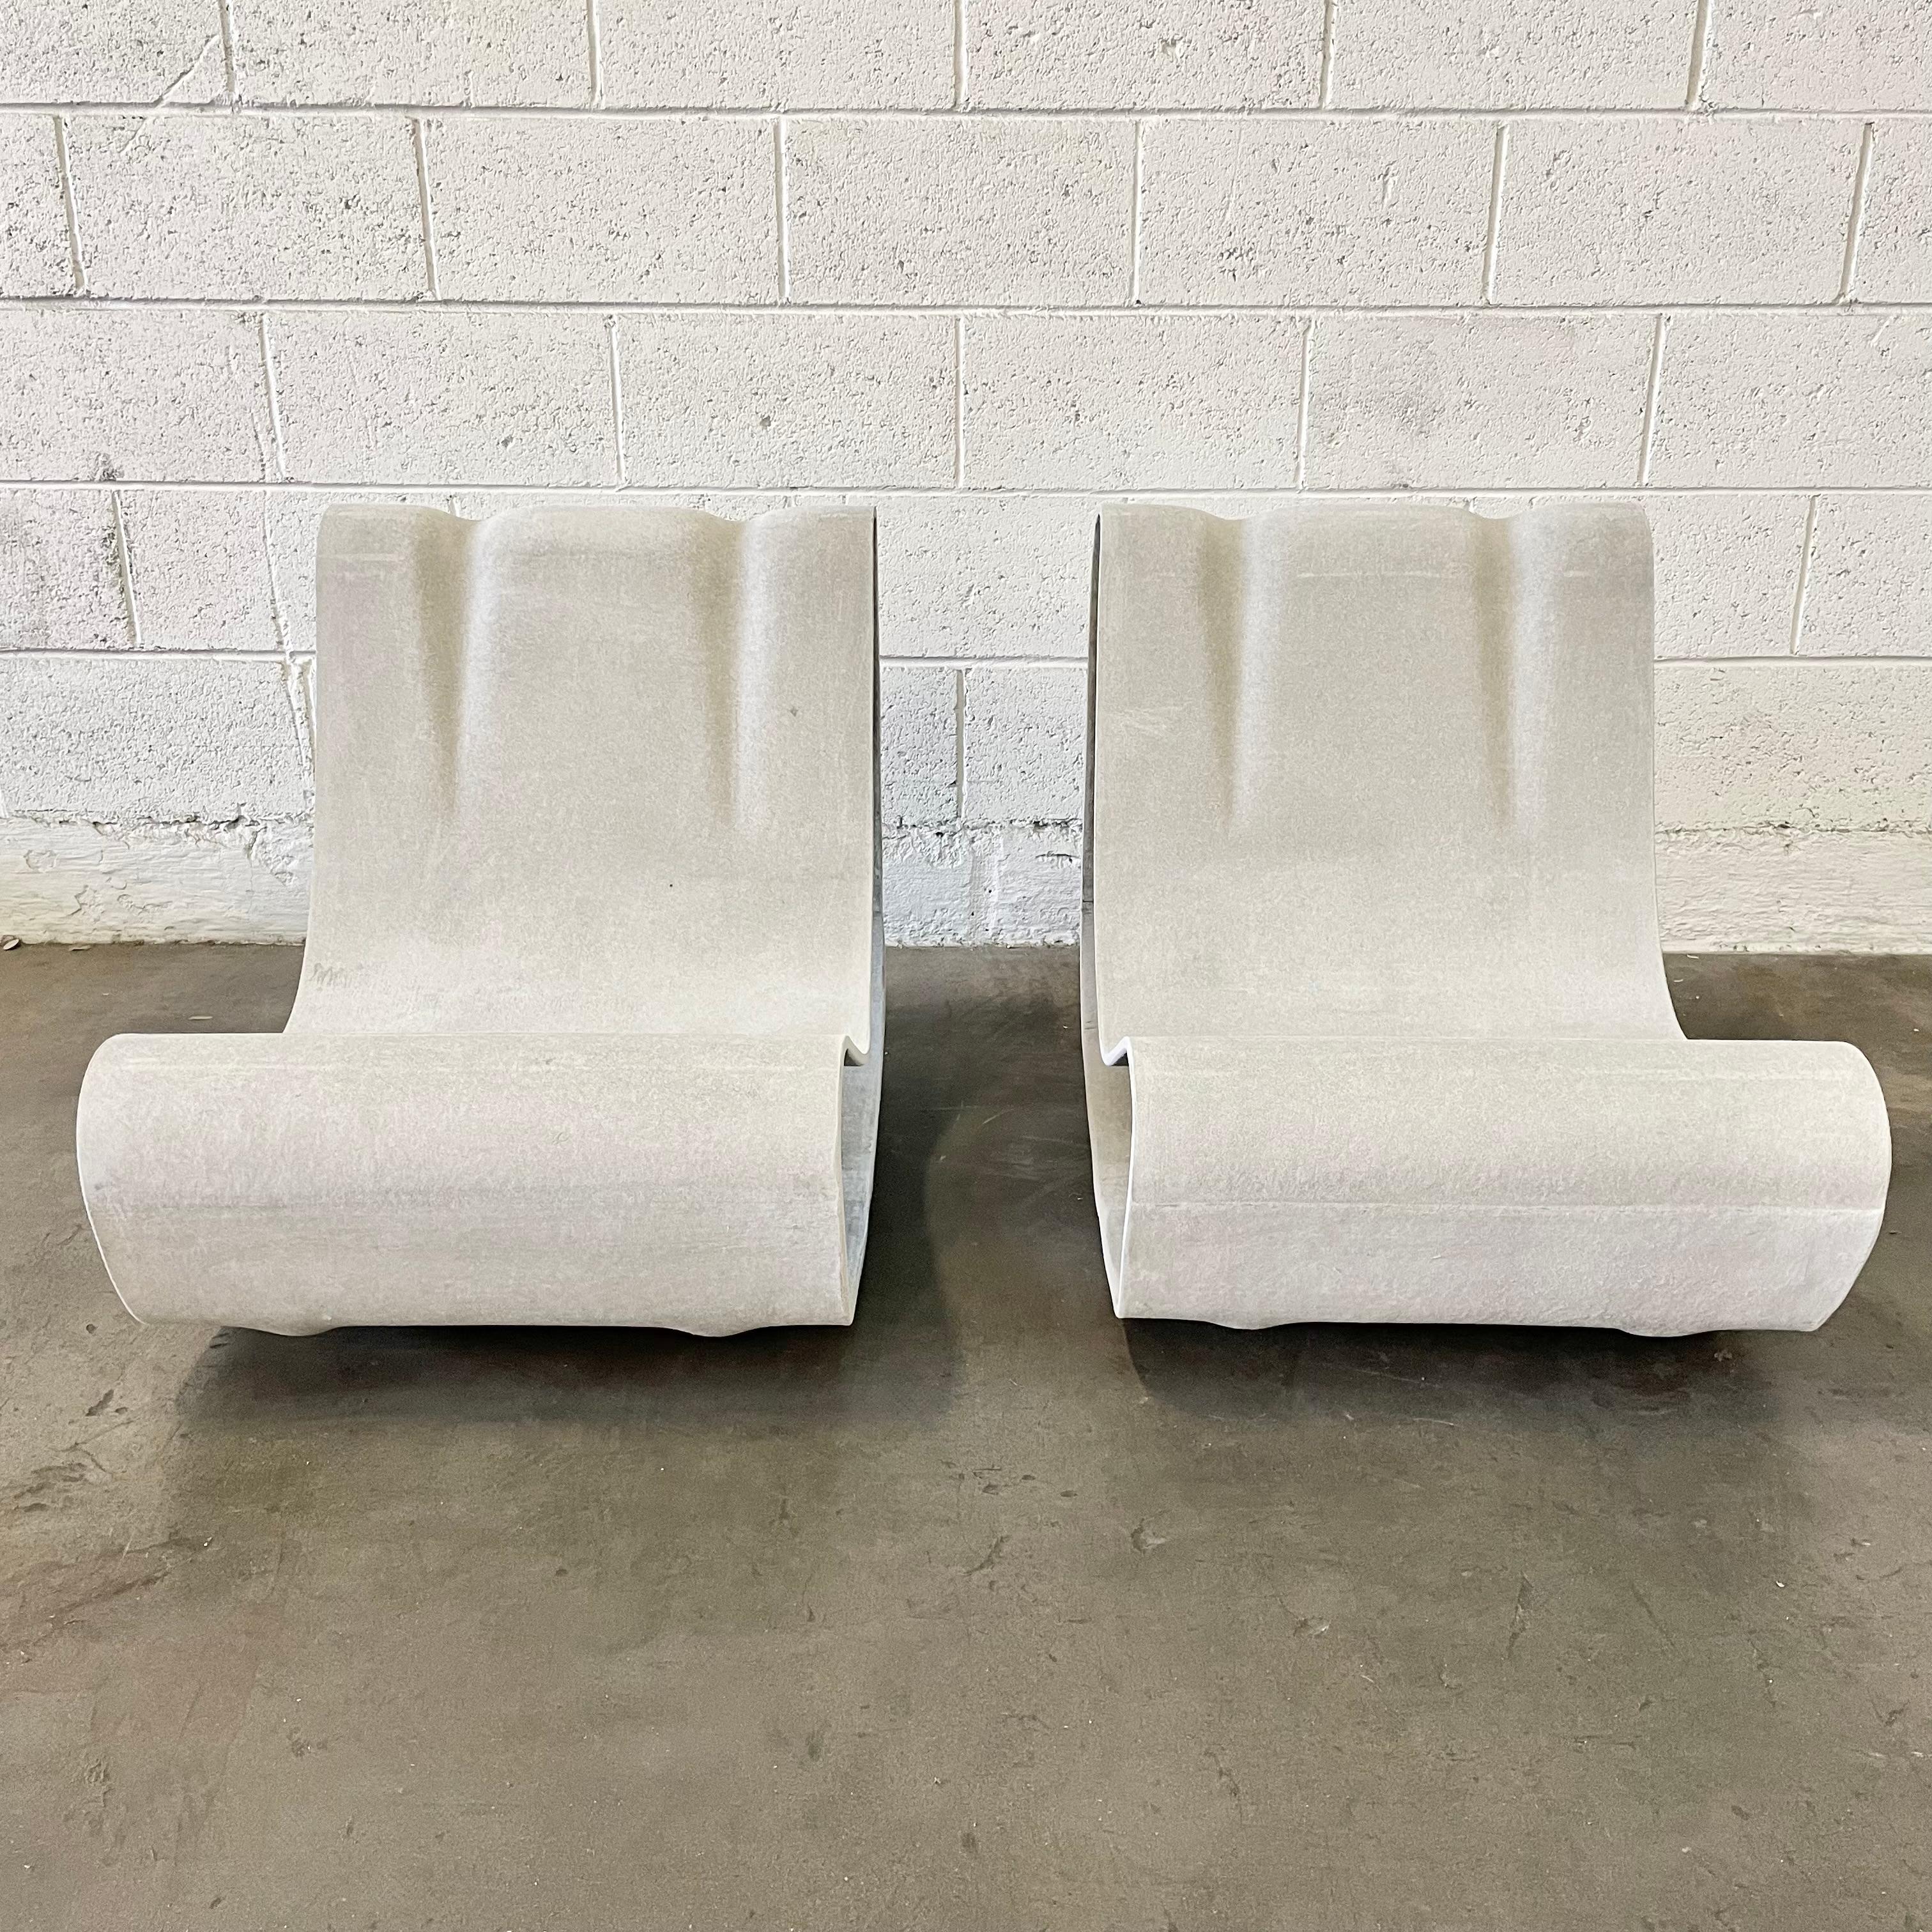 Fantastisches Paar Zementstühle des Schweizer Designers Willy Guhl für Eternit. Brandneu. Handgefertigt in der Schweiz. Neu produziert. Der Preis gilt für ein Paar. Einer der kultigsten Stühle, die je entworfen wurden.
 